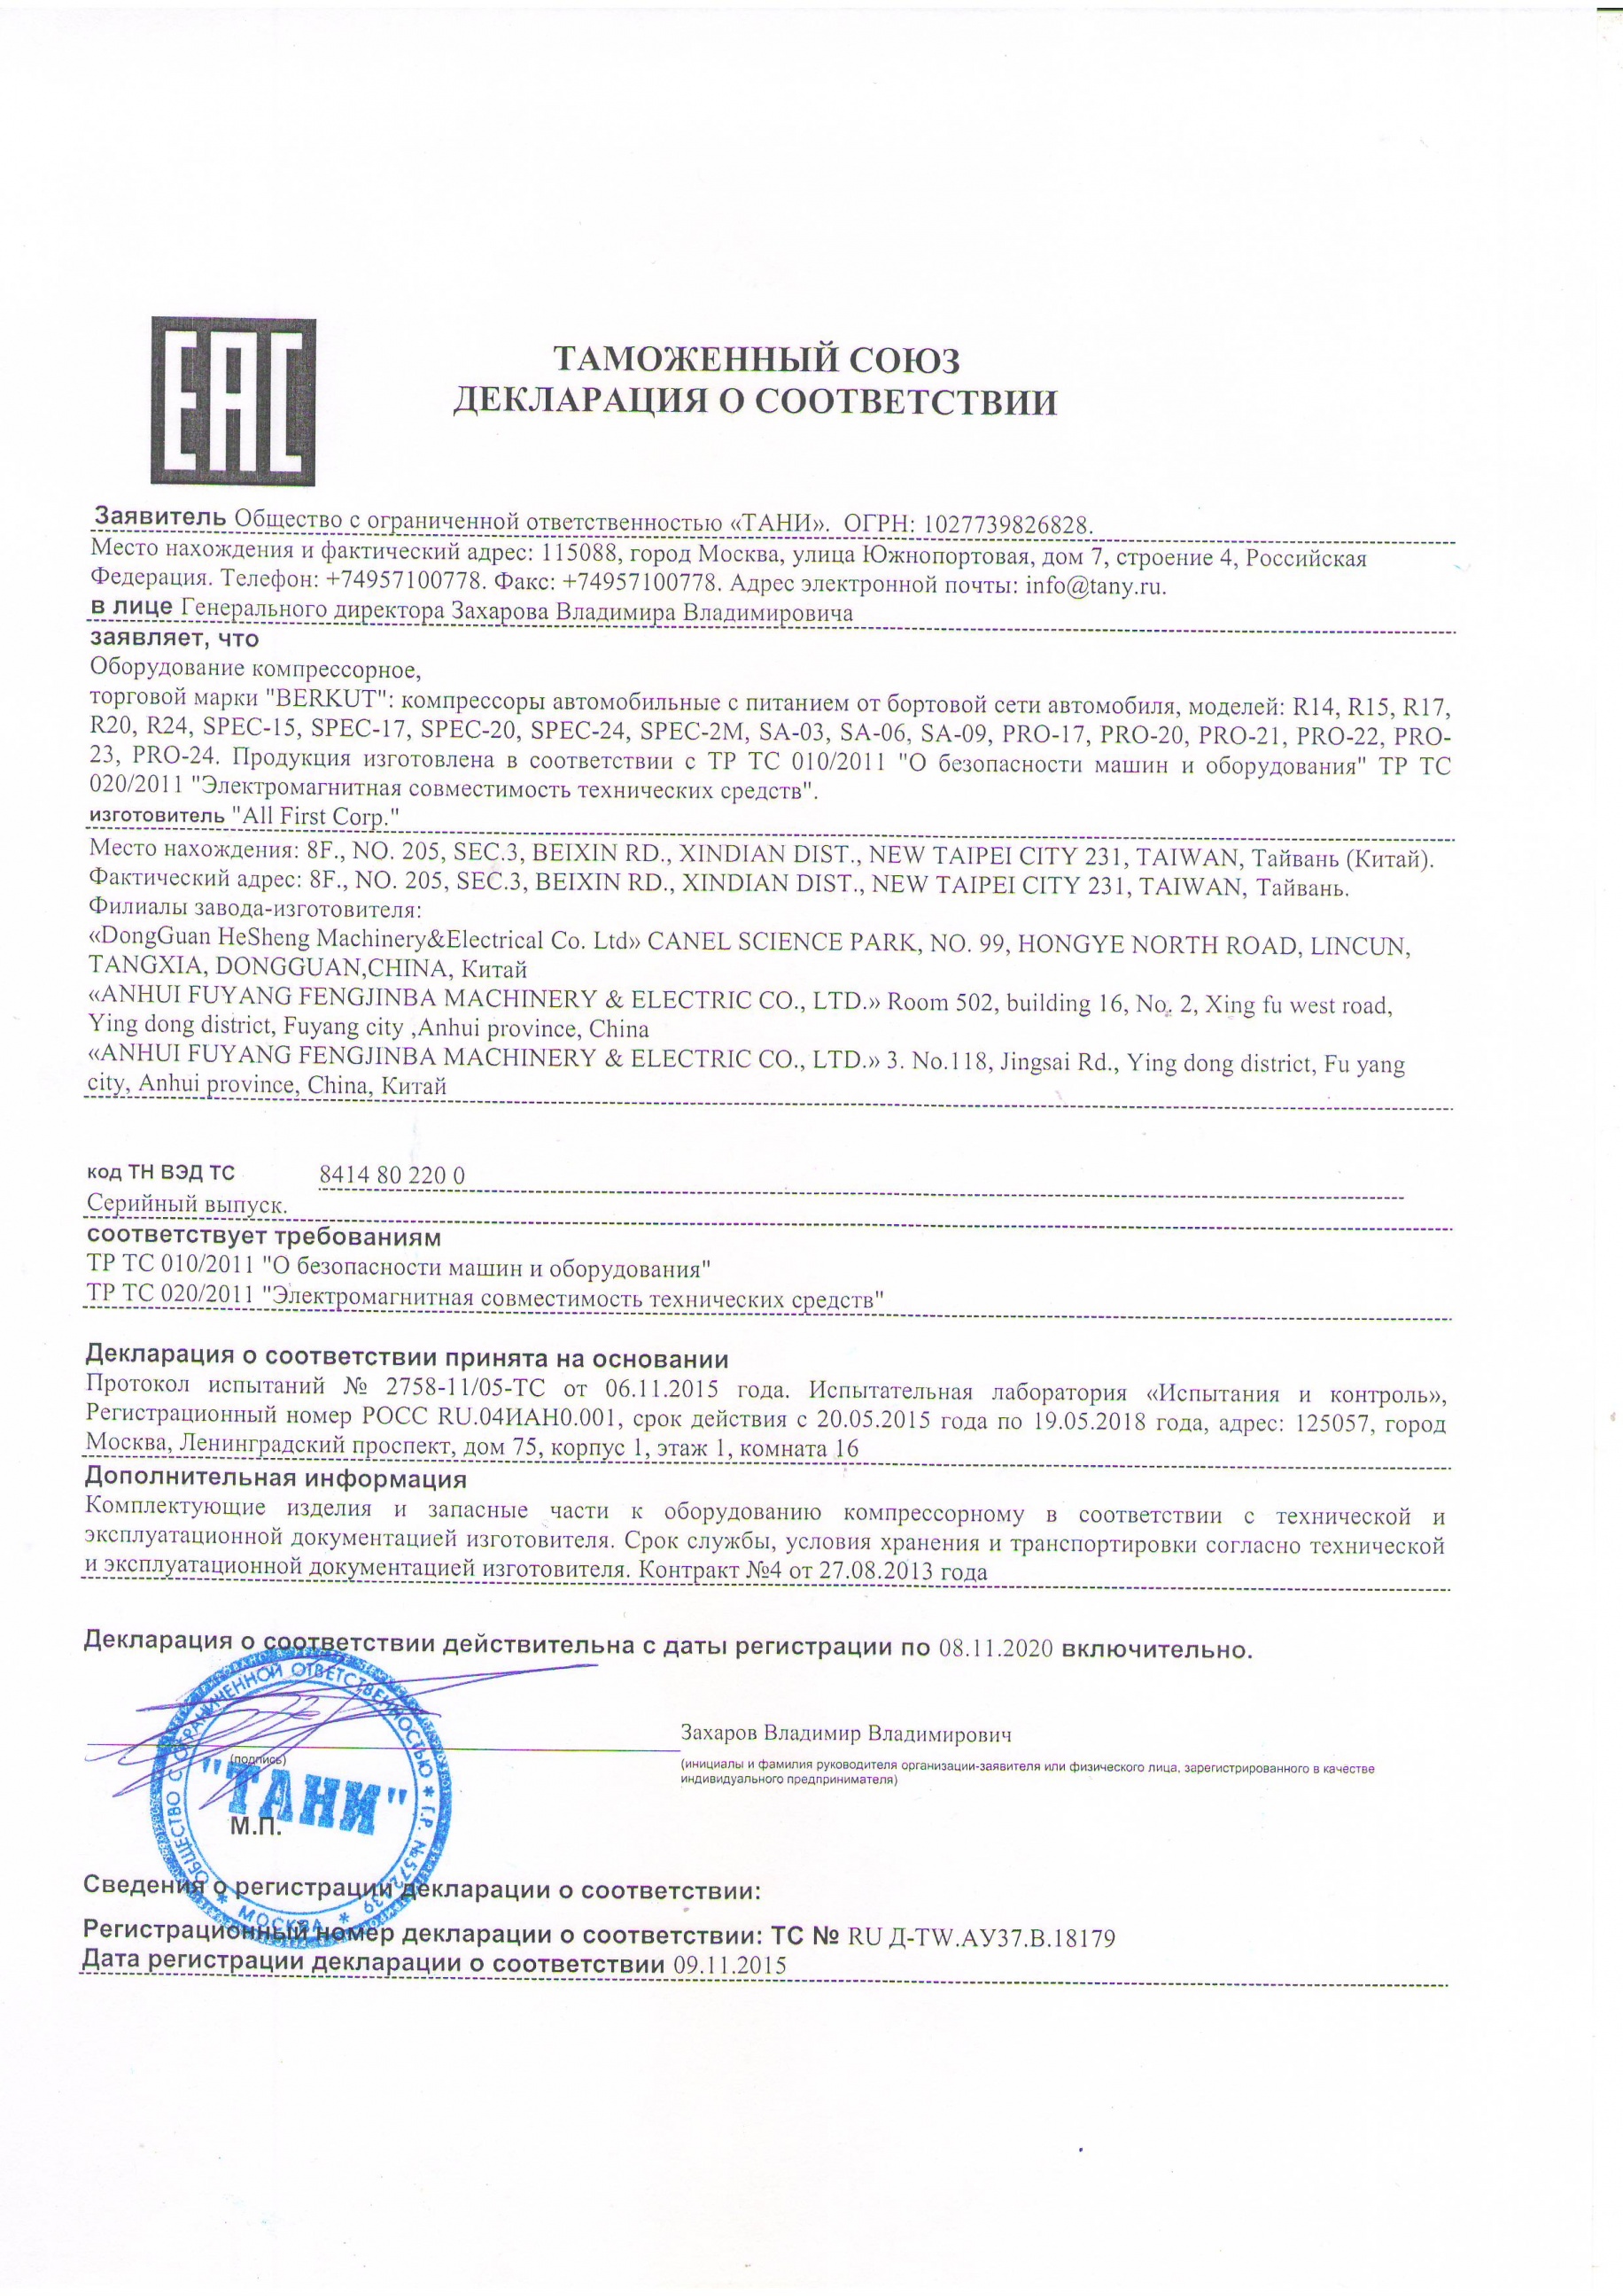 Сертификат на компрессоры «Berkut»